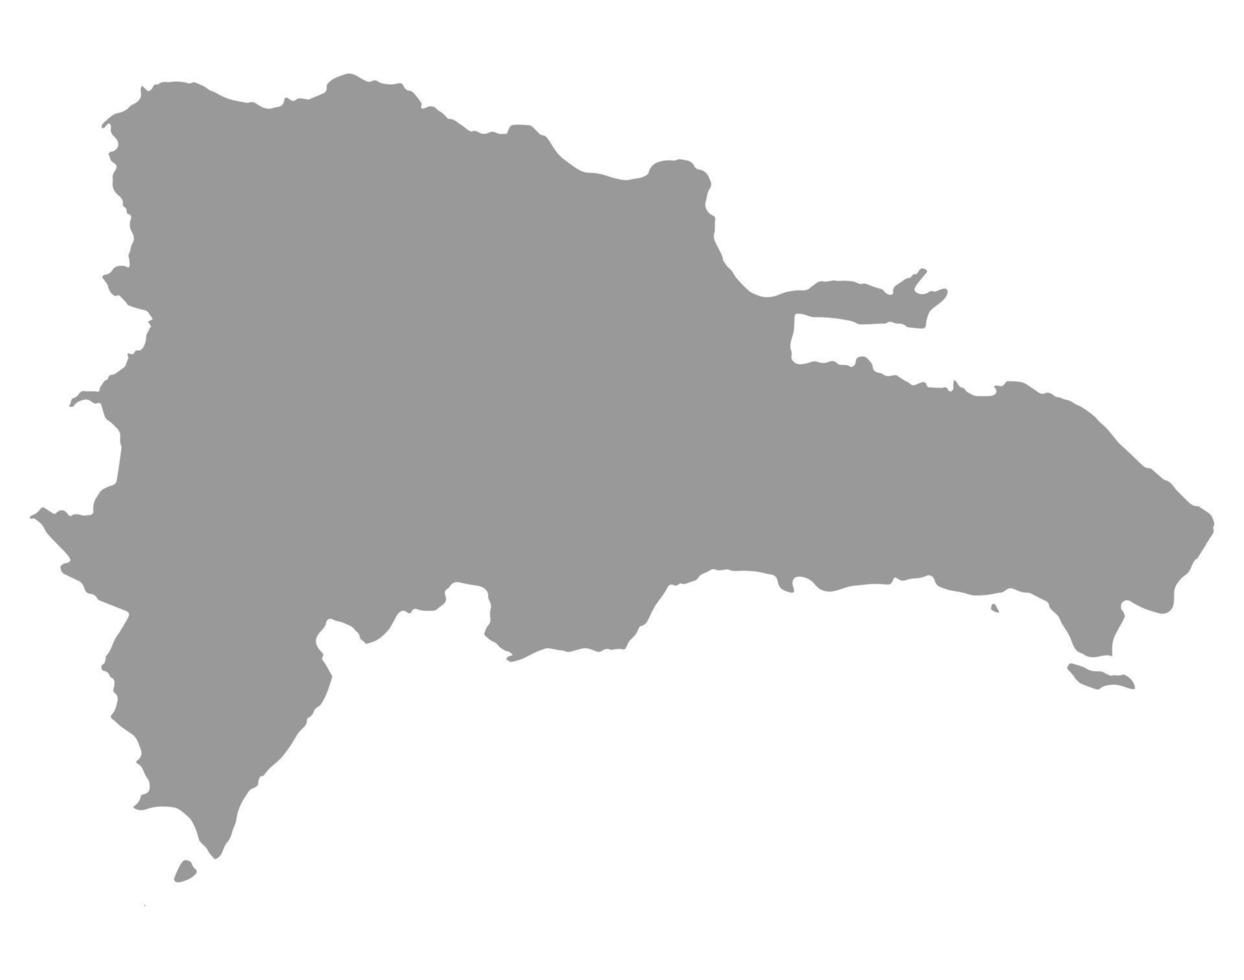 mappa della repubblica dominicana su png o sfondo trasparente.simbolo della repubblica dominicana.illustrazione vettoriale